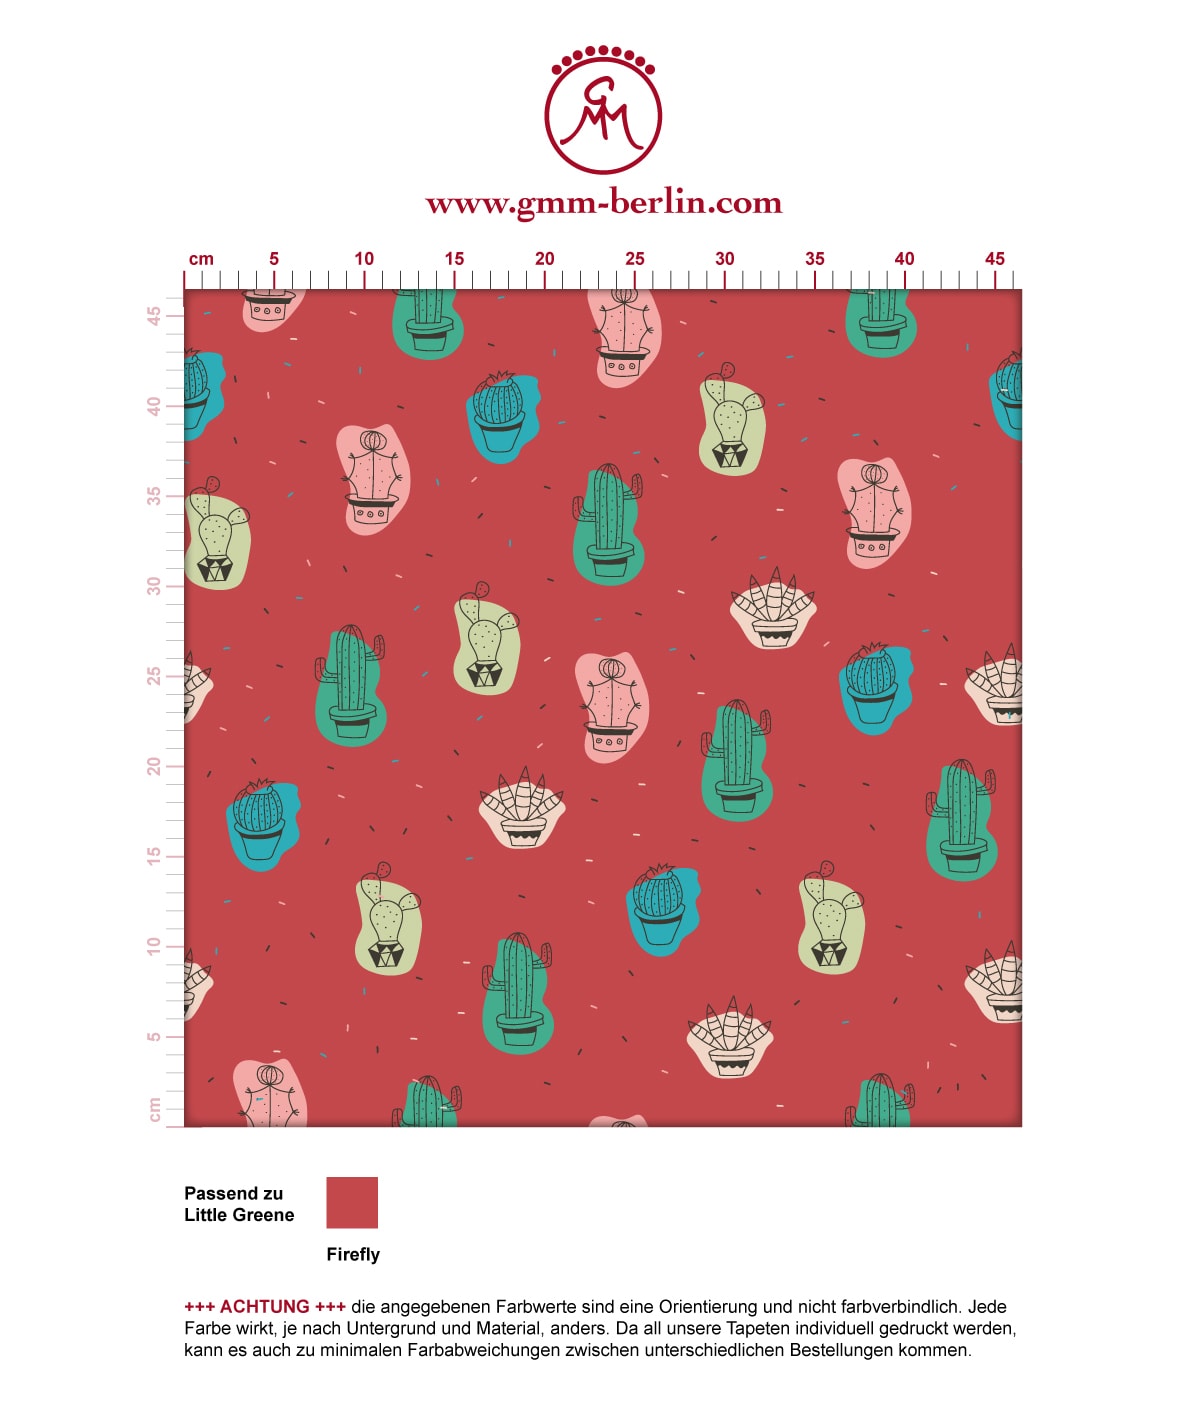 Designer Tapete "Wüstenzauber" mit bunten Kakteen auf rot angepasst an Little Greene Wandfarben. Aus dem GMM-BERLIN.com Sortiment: Schöne Tapeten in der Farbe: rot